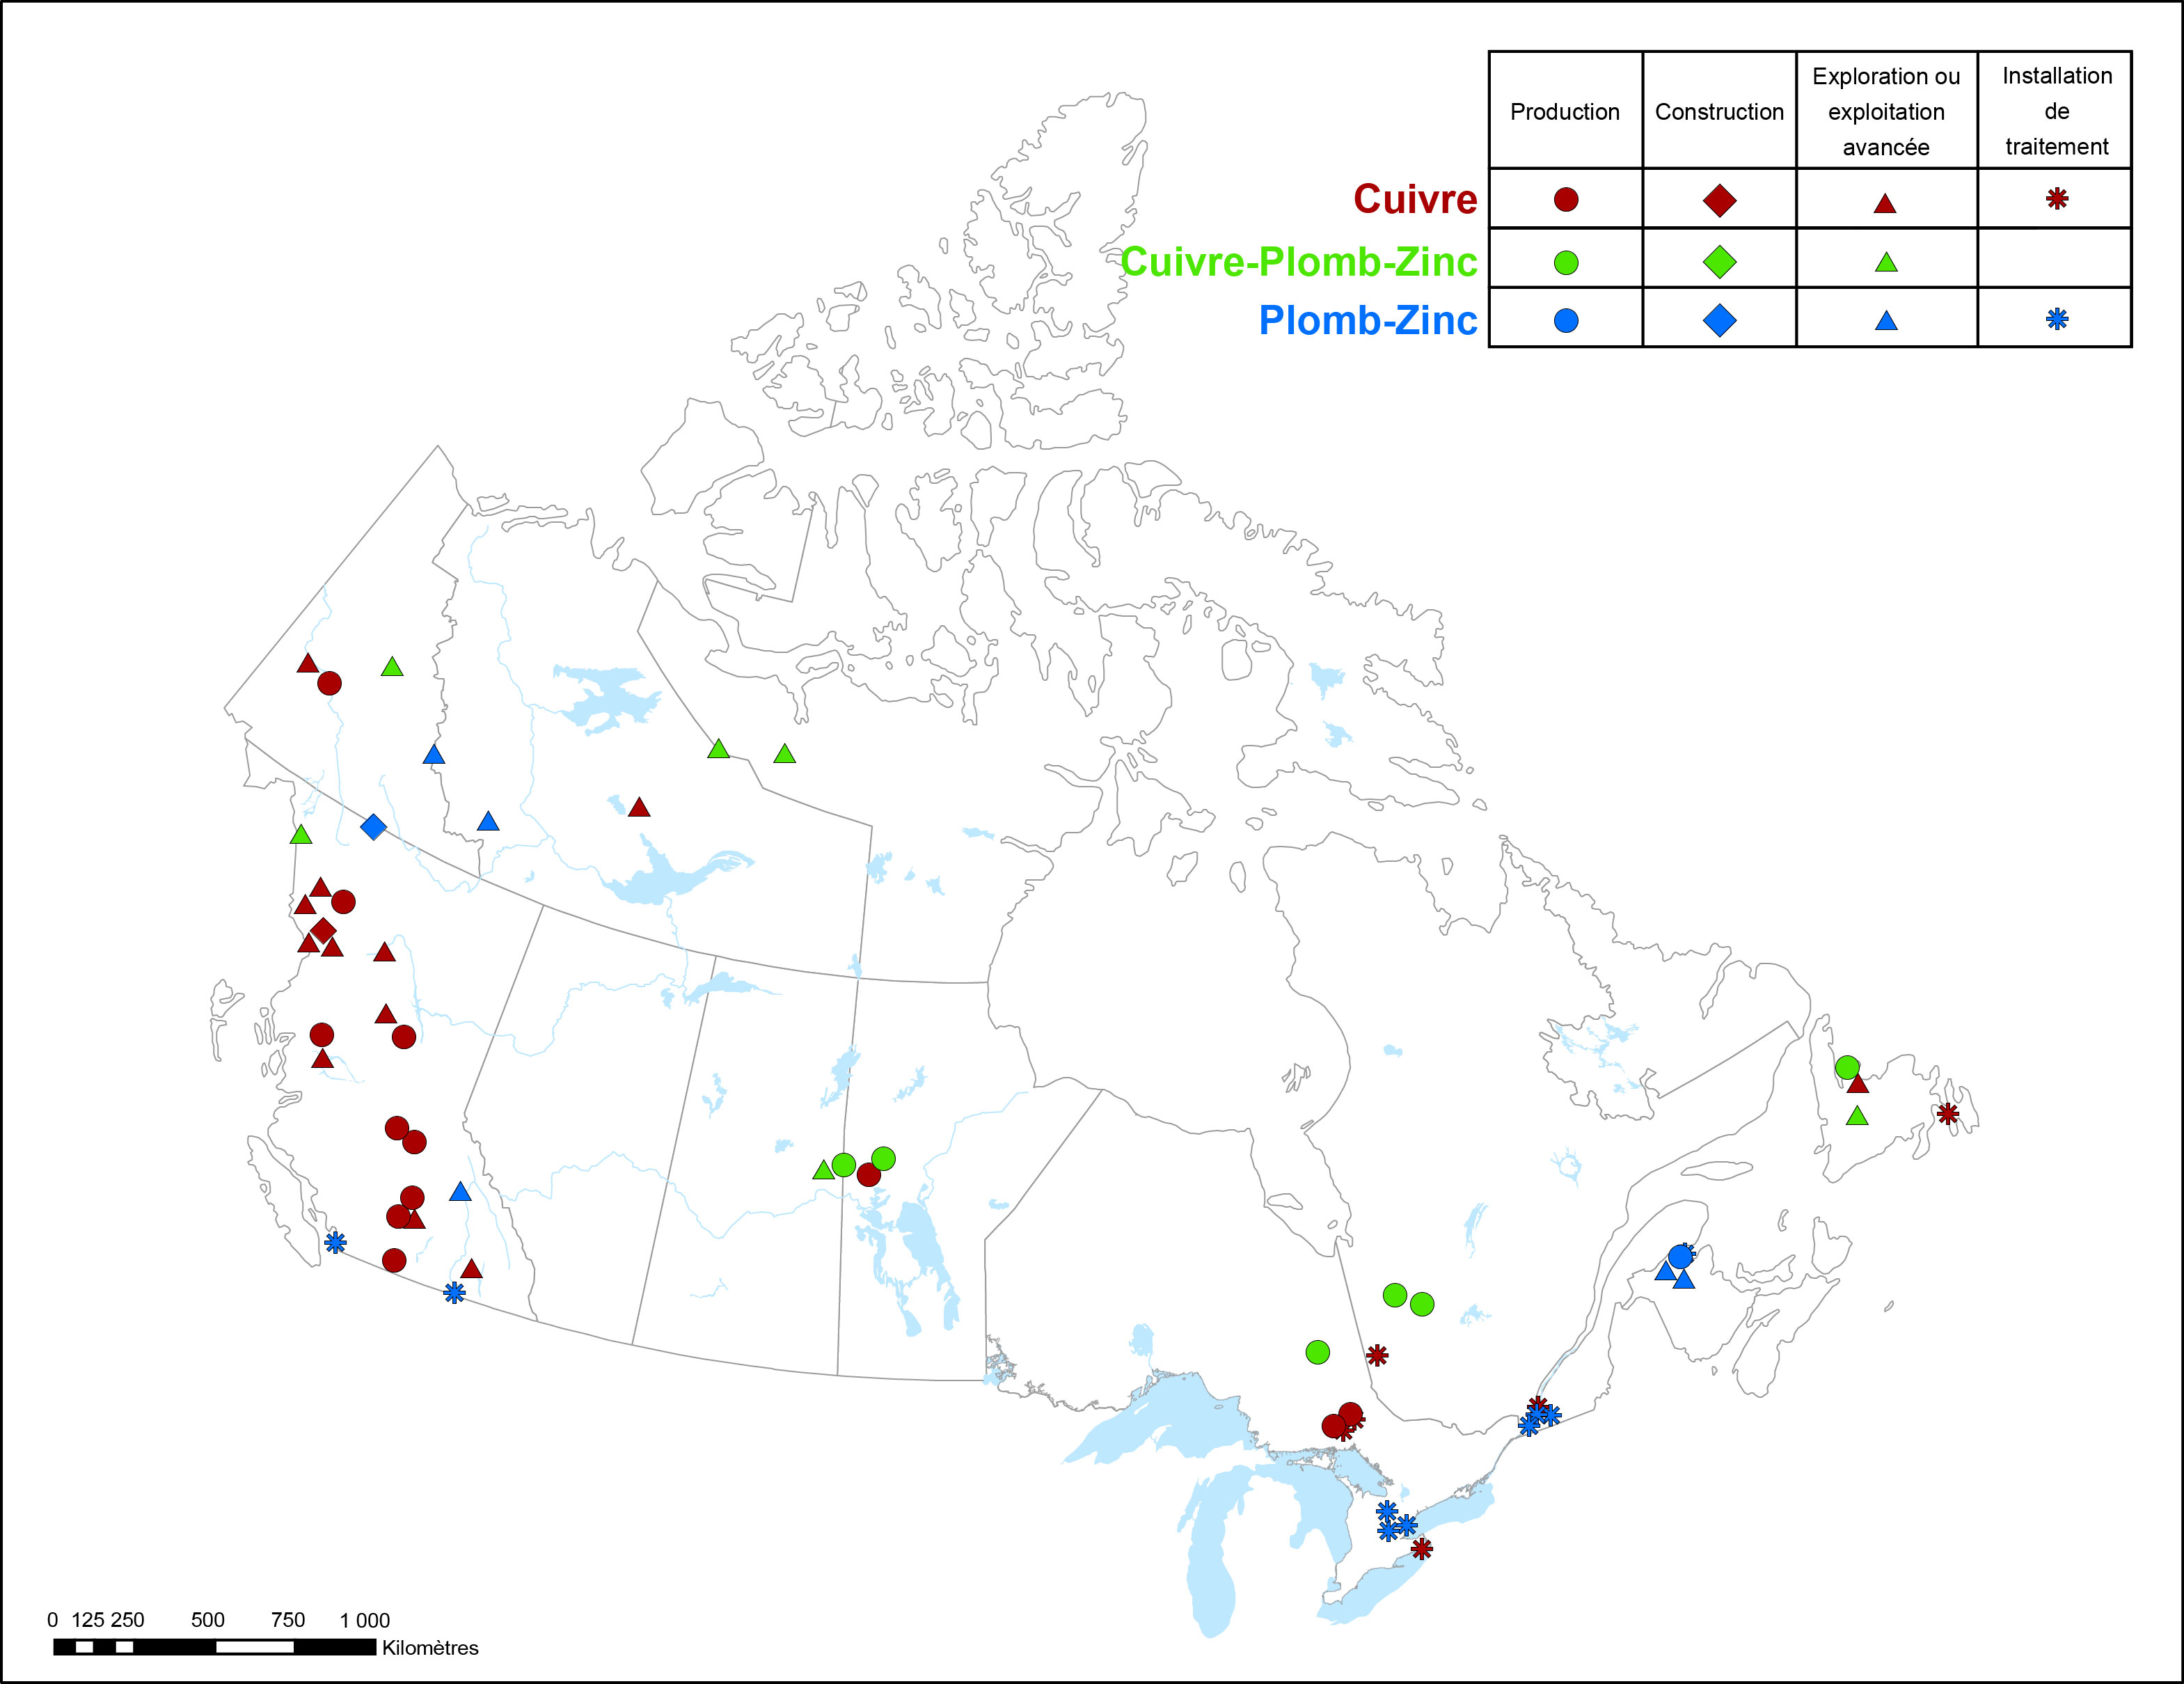 La figure 1 est une carte du Canada qui montre l'emplacement géographique des mines métalliques, des fonderies et des affineries